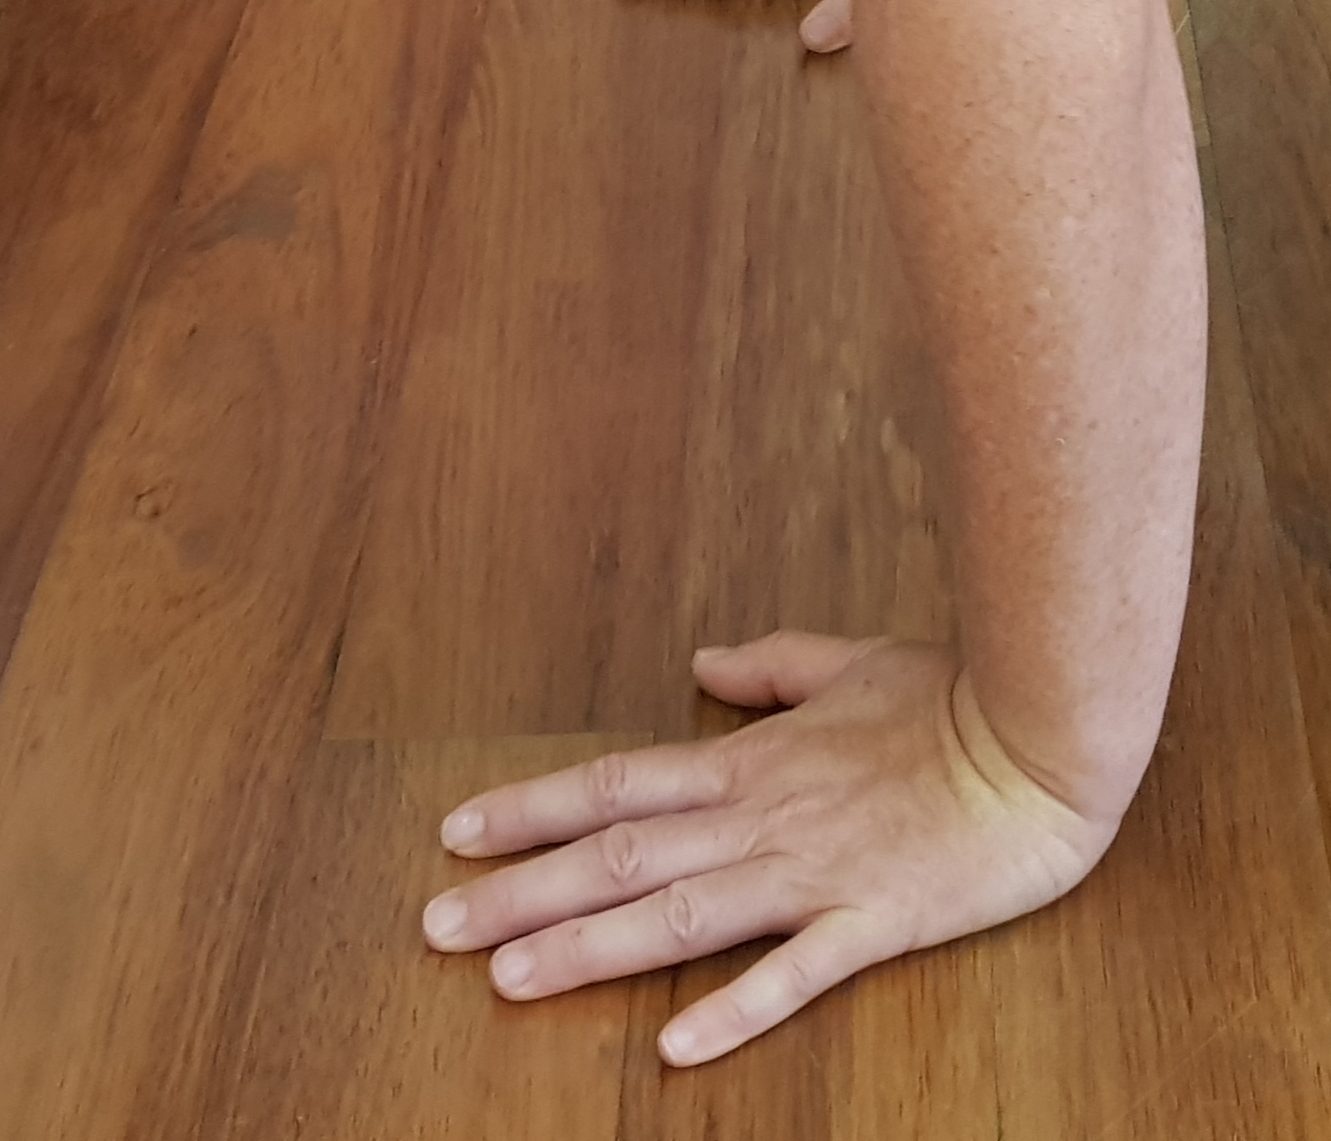 Wrist in compression